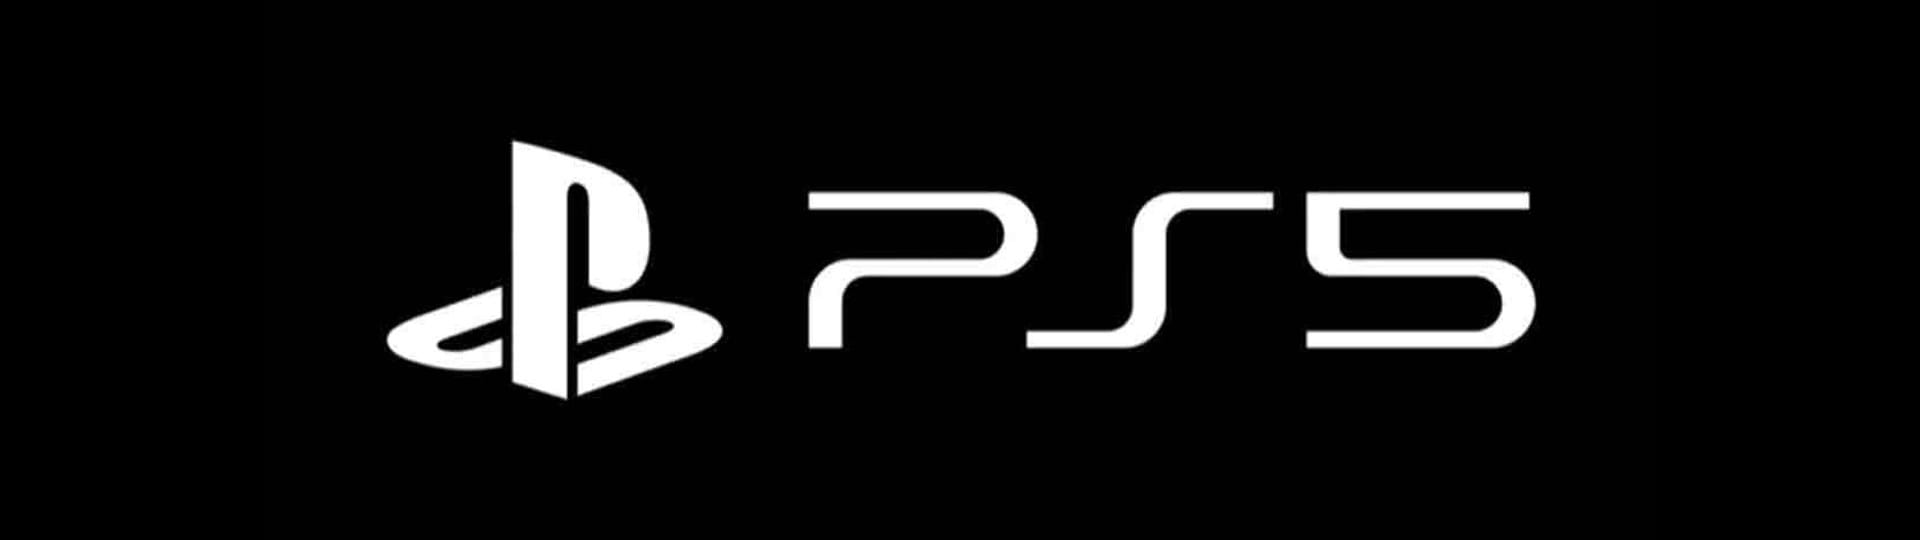 PS5 logo slice